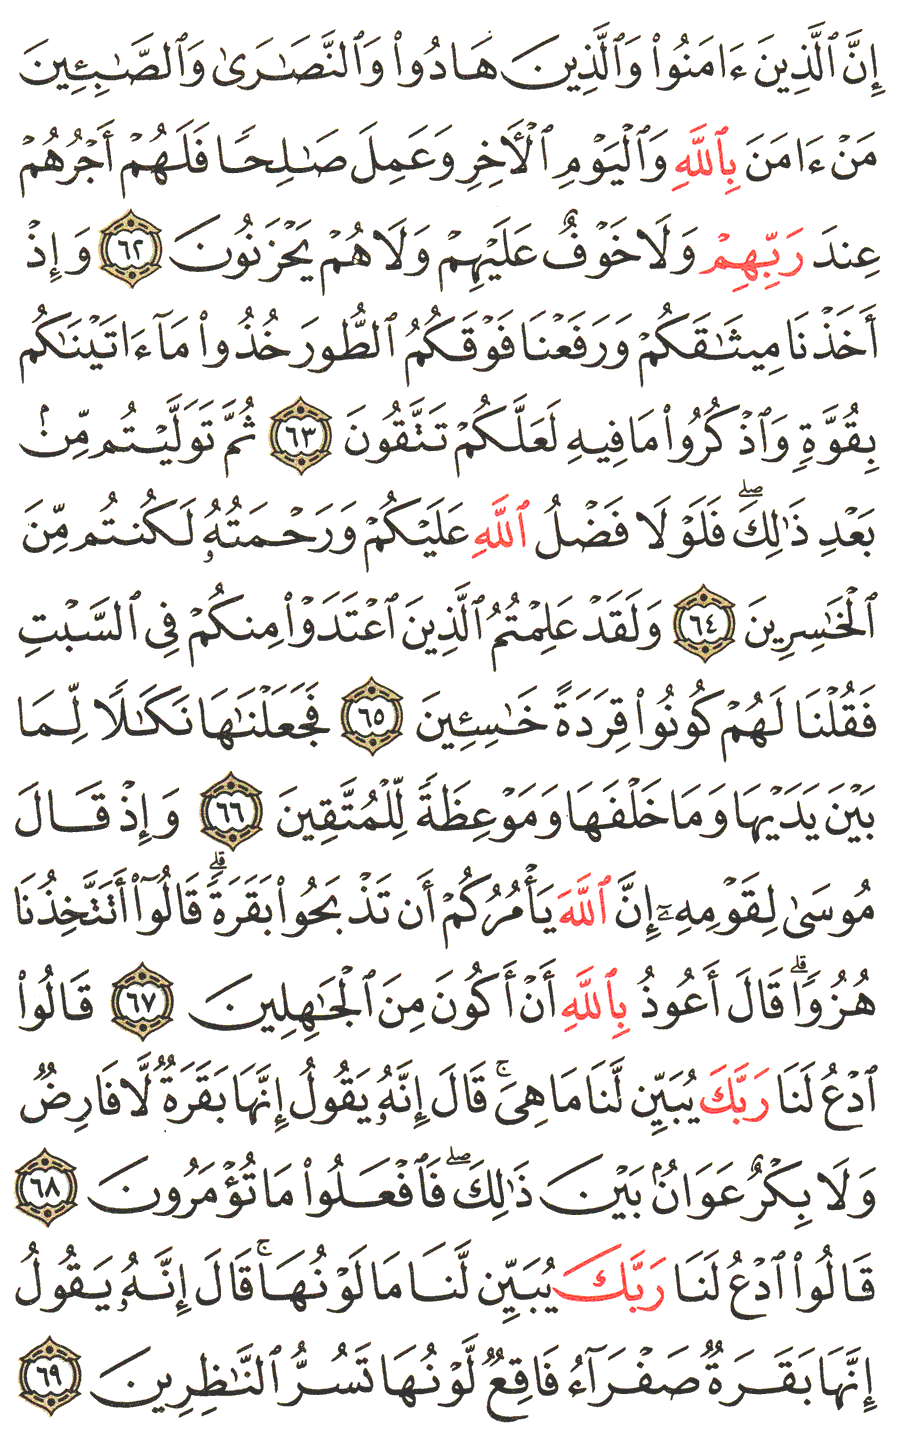 الصفحة رقم  10 من القرآن الكريم مكتوبة من المصحف